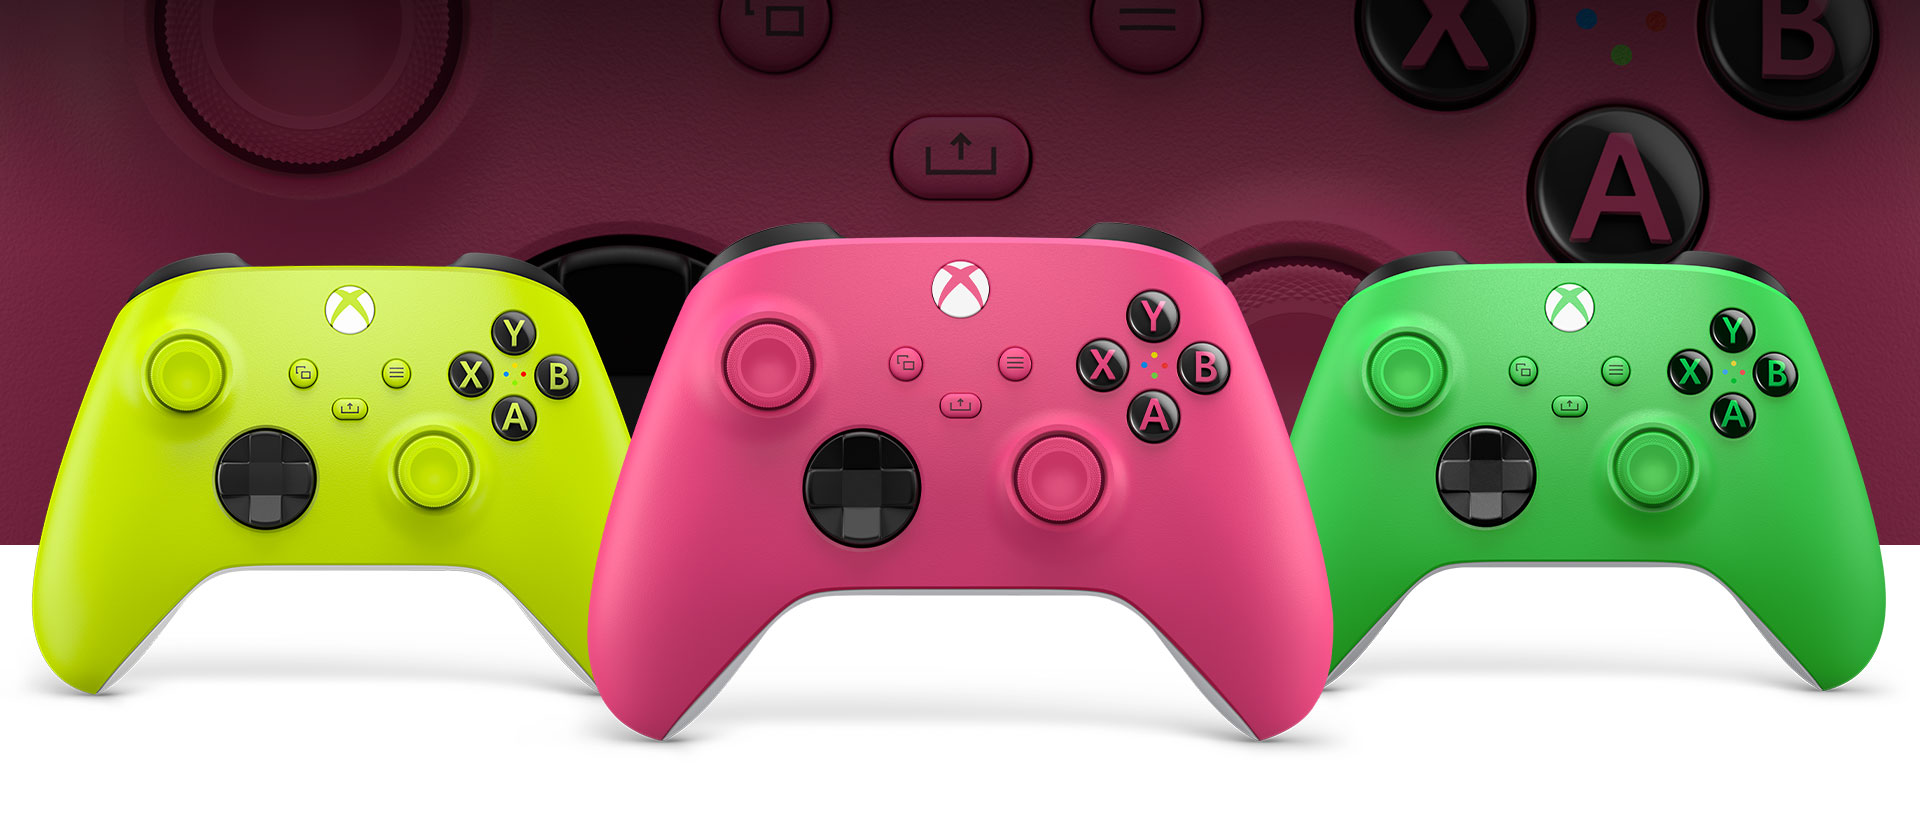 Vaaleanpunainen Xbox-ohjain edessä, Volt-ohjain vasemmalla ja vihreä ohjain oikealla